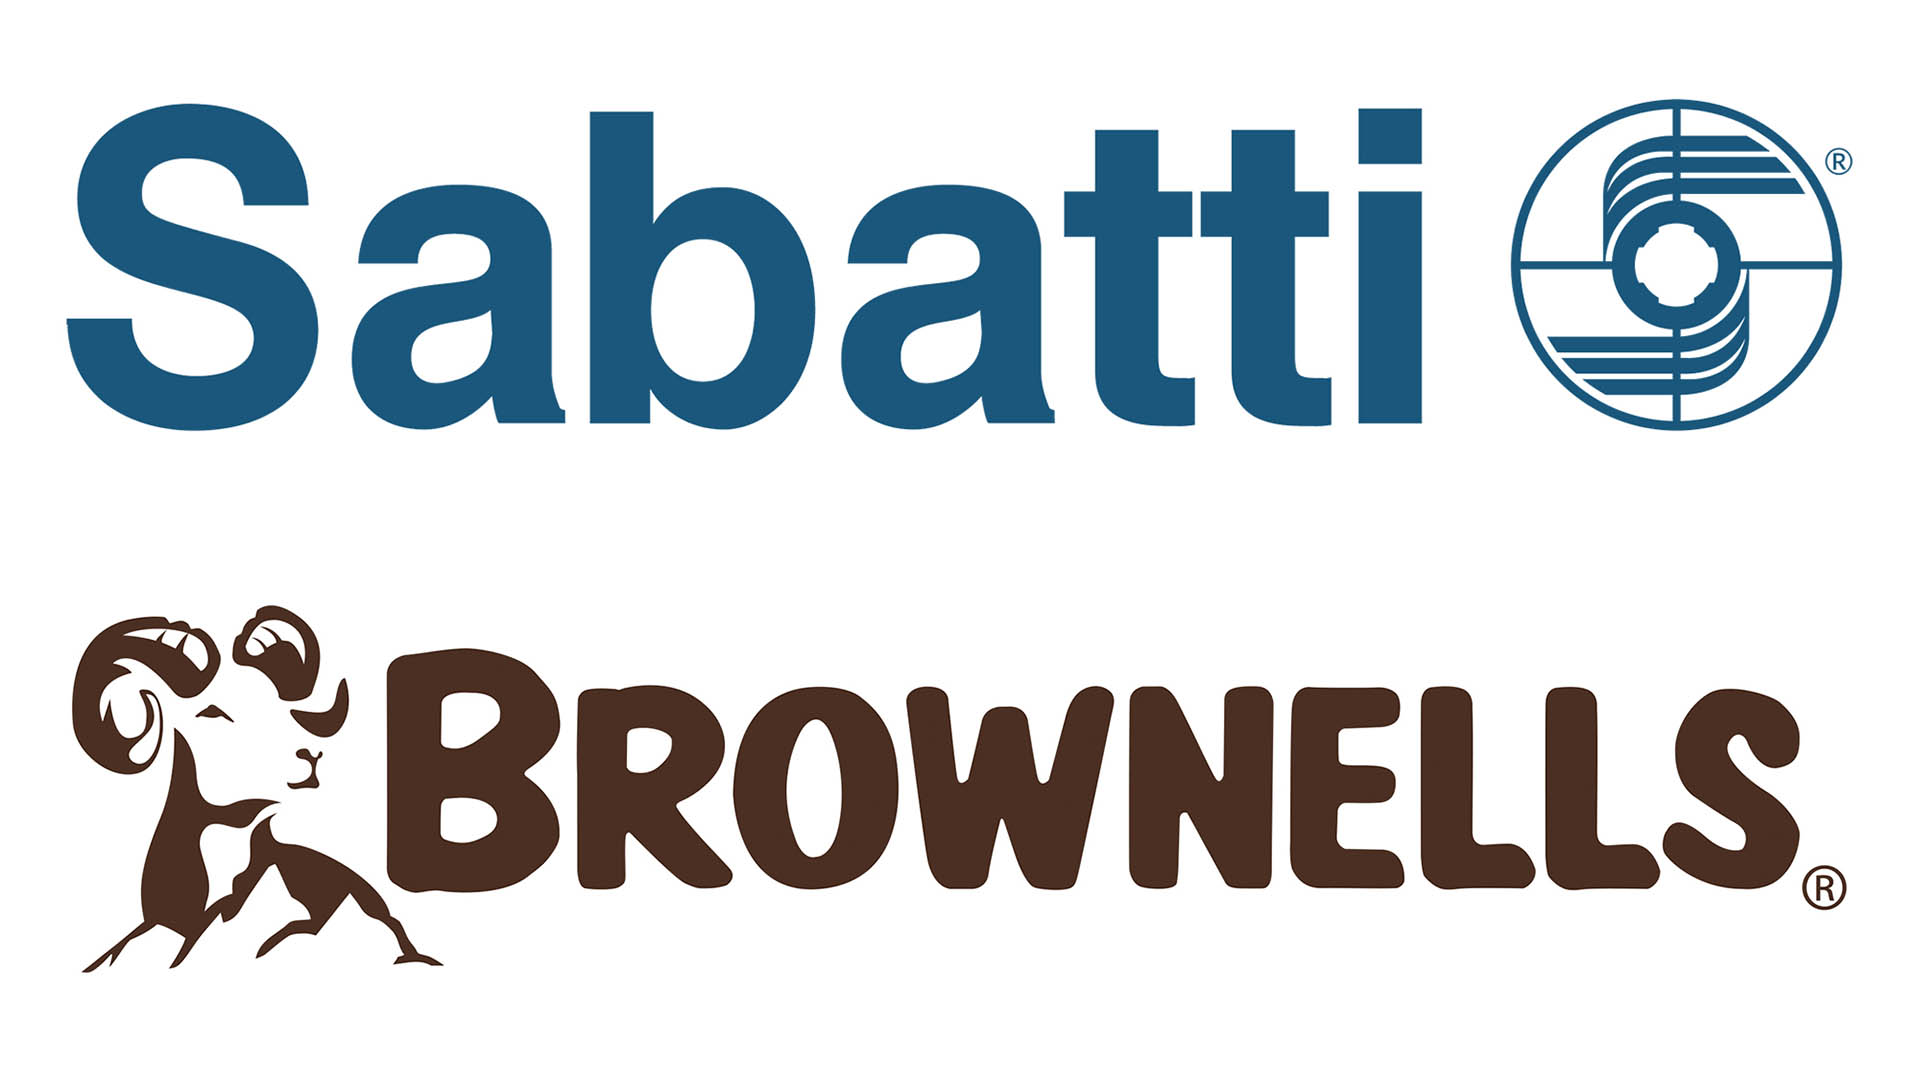 Sabatti e Brownells hanno attivato una collaborazione a marzo 2023. Questa azione ha portato alla costituzione di una Brownells zone all'interno della costruzione che ospita lo showroom Sabatti